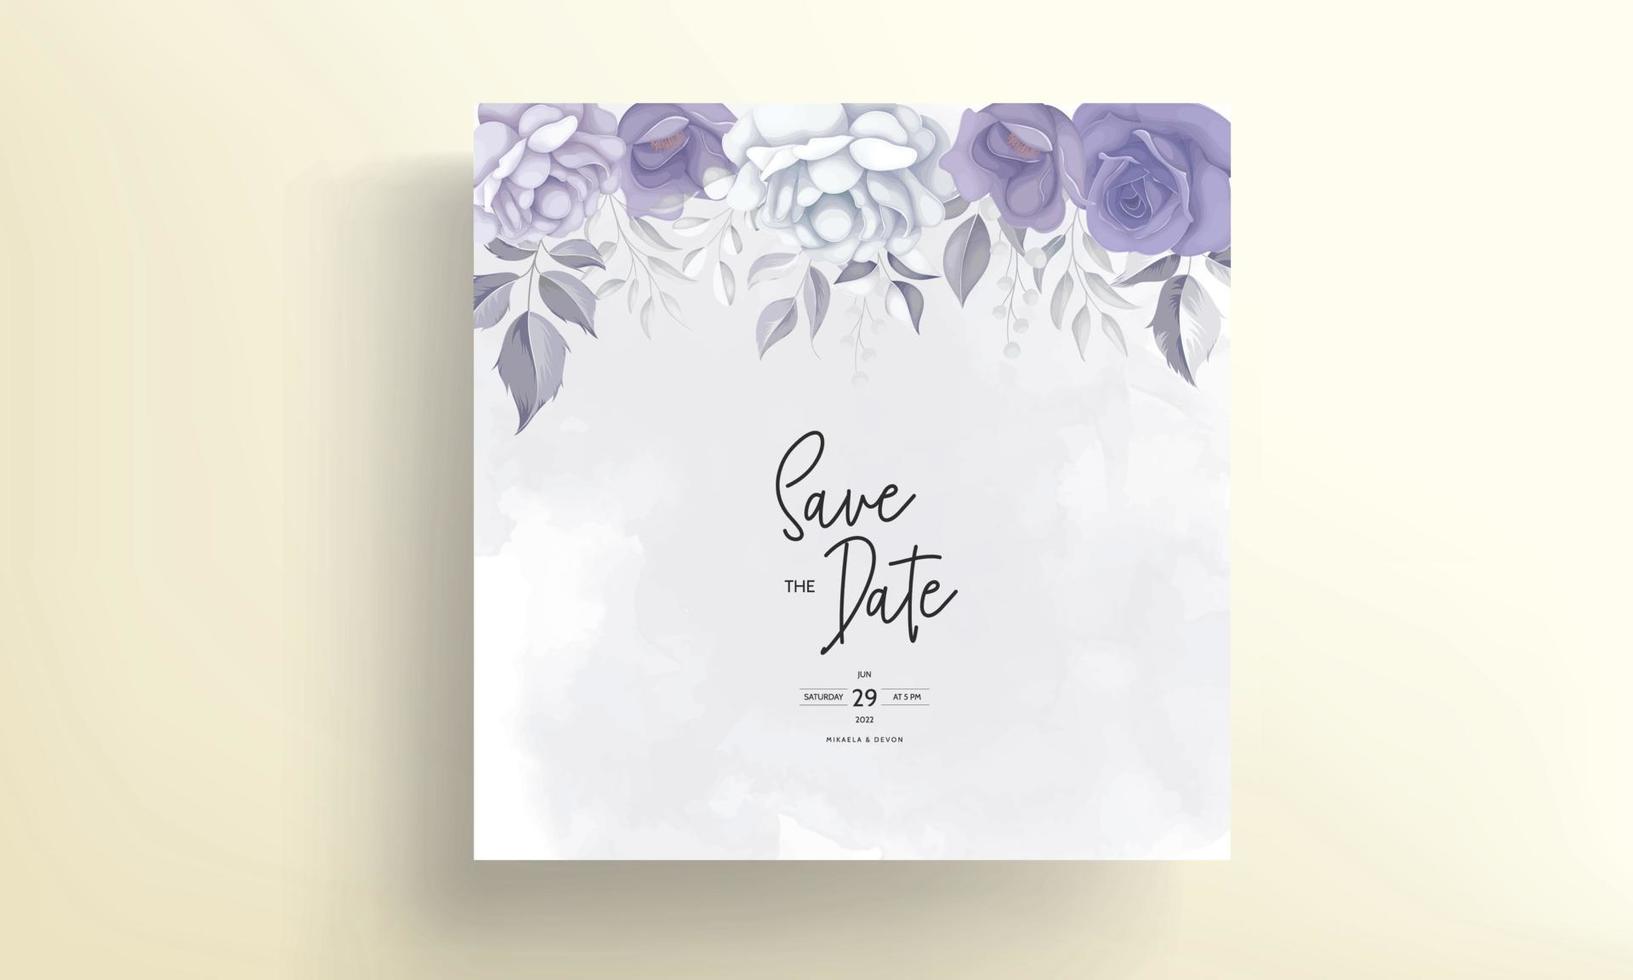 schöne Hochzeitseinladungskarte mit lila Blumendekoration vektor